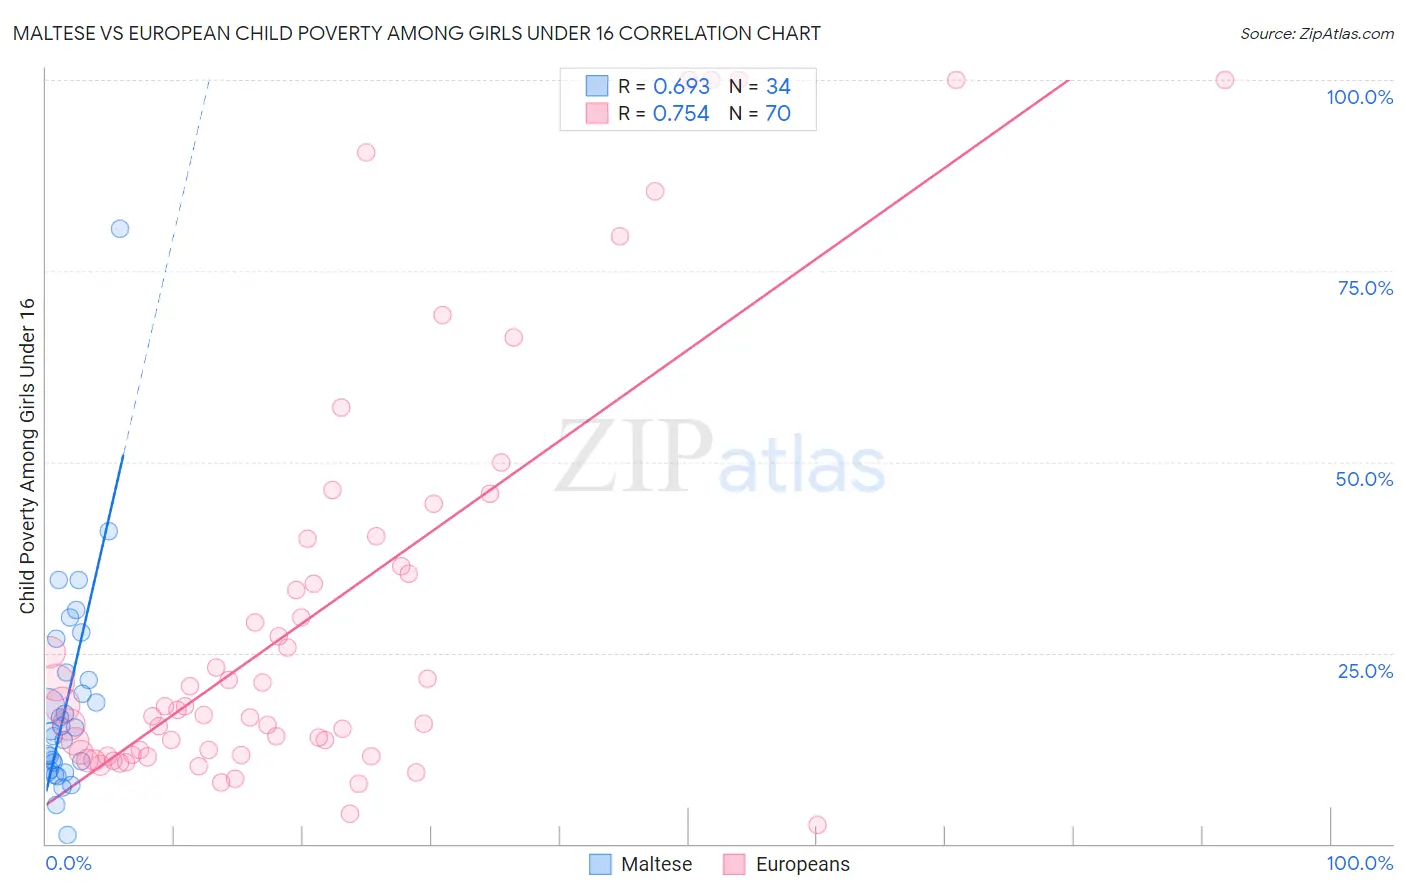 Maltese vs European Child Poverty Among Girls Under 16